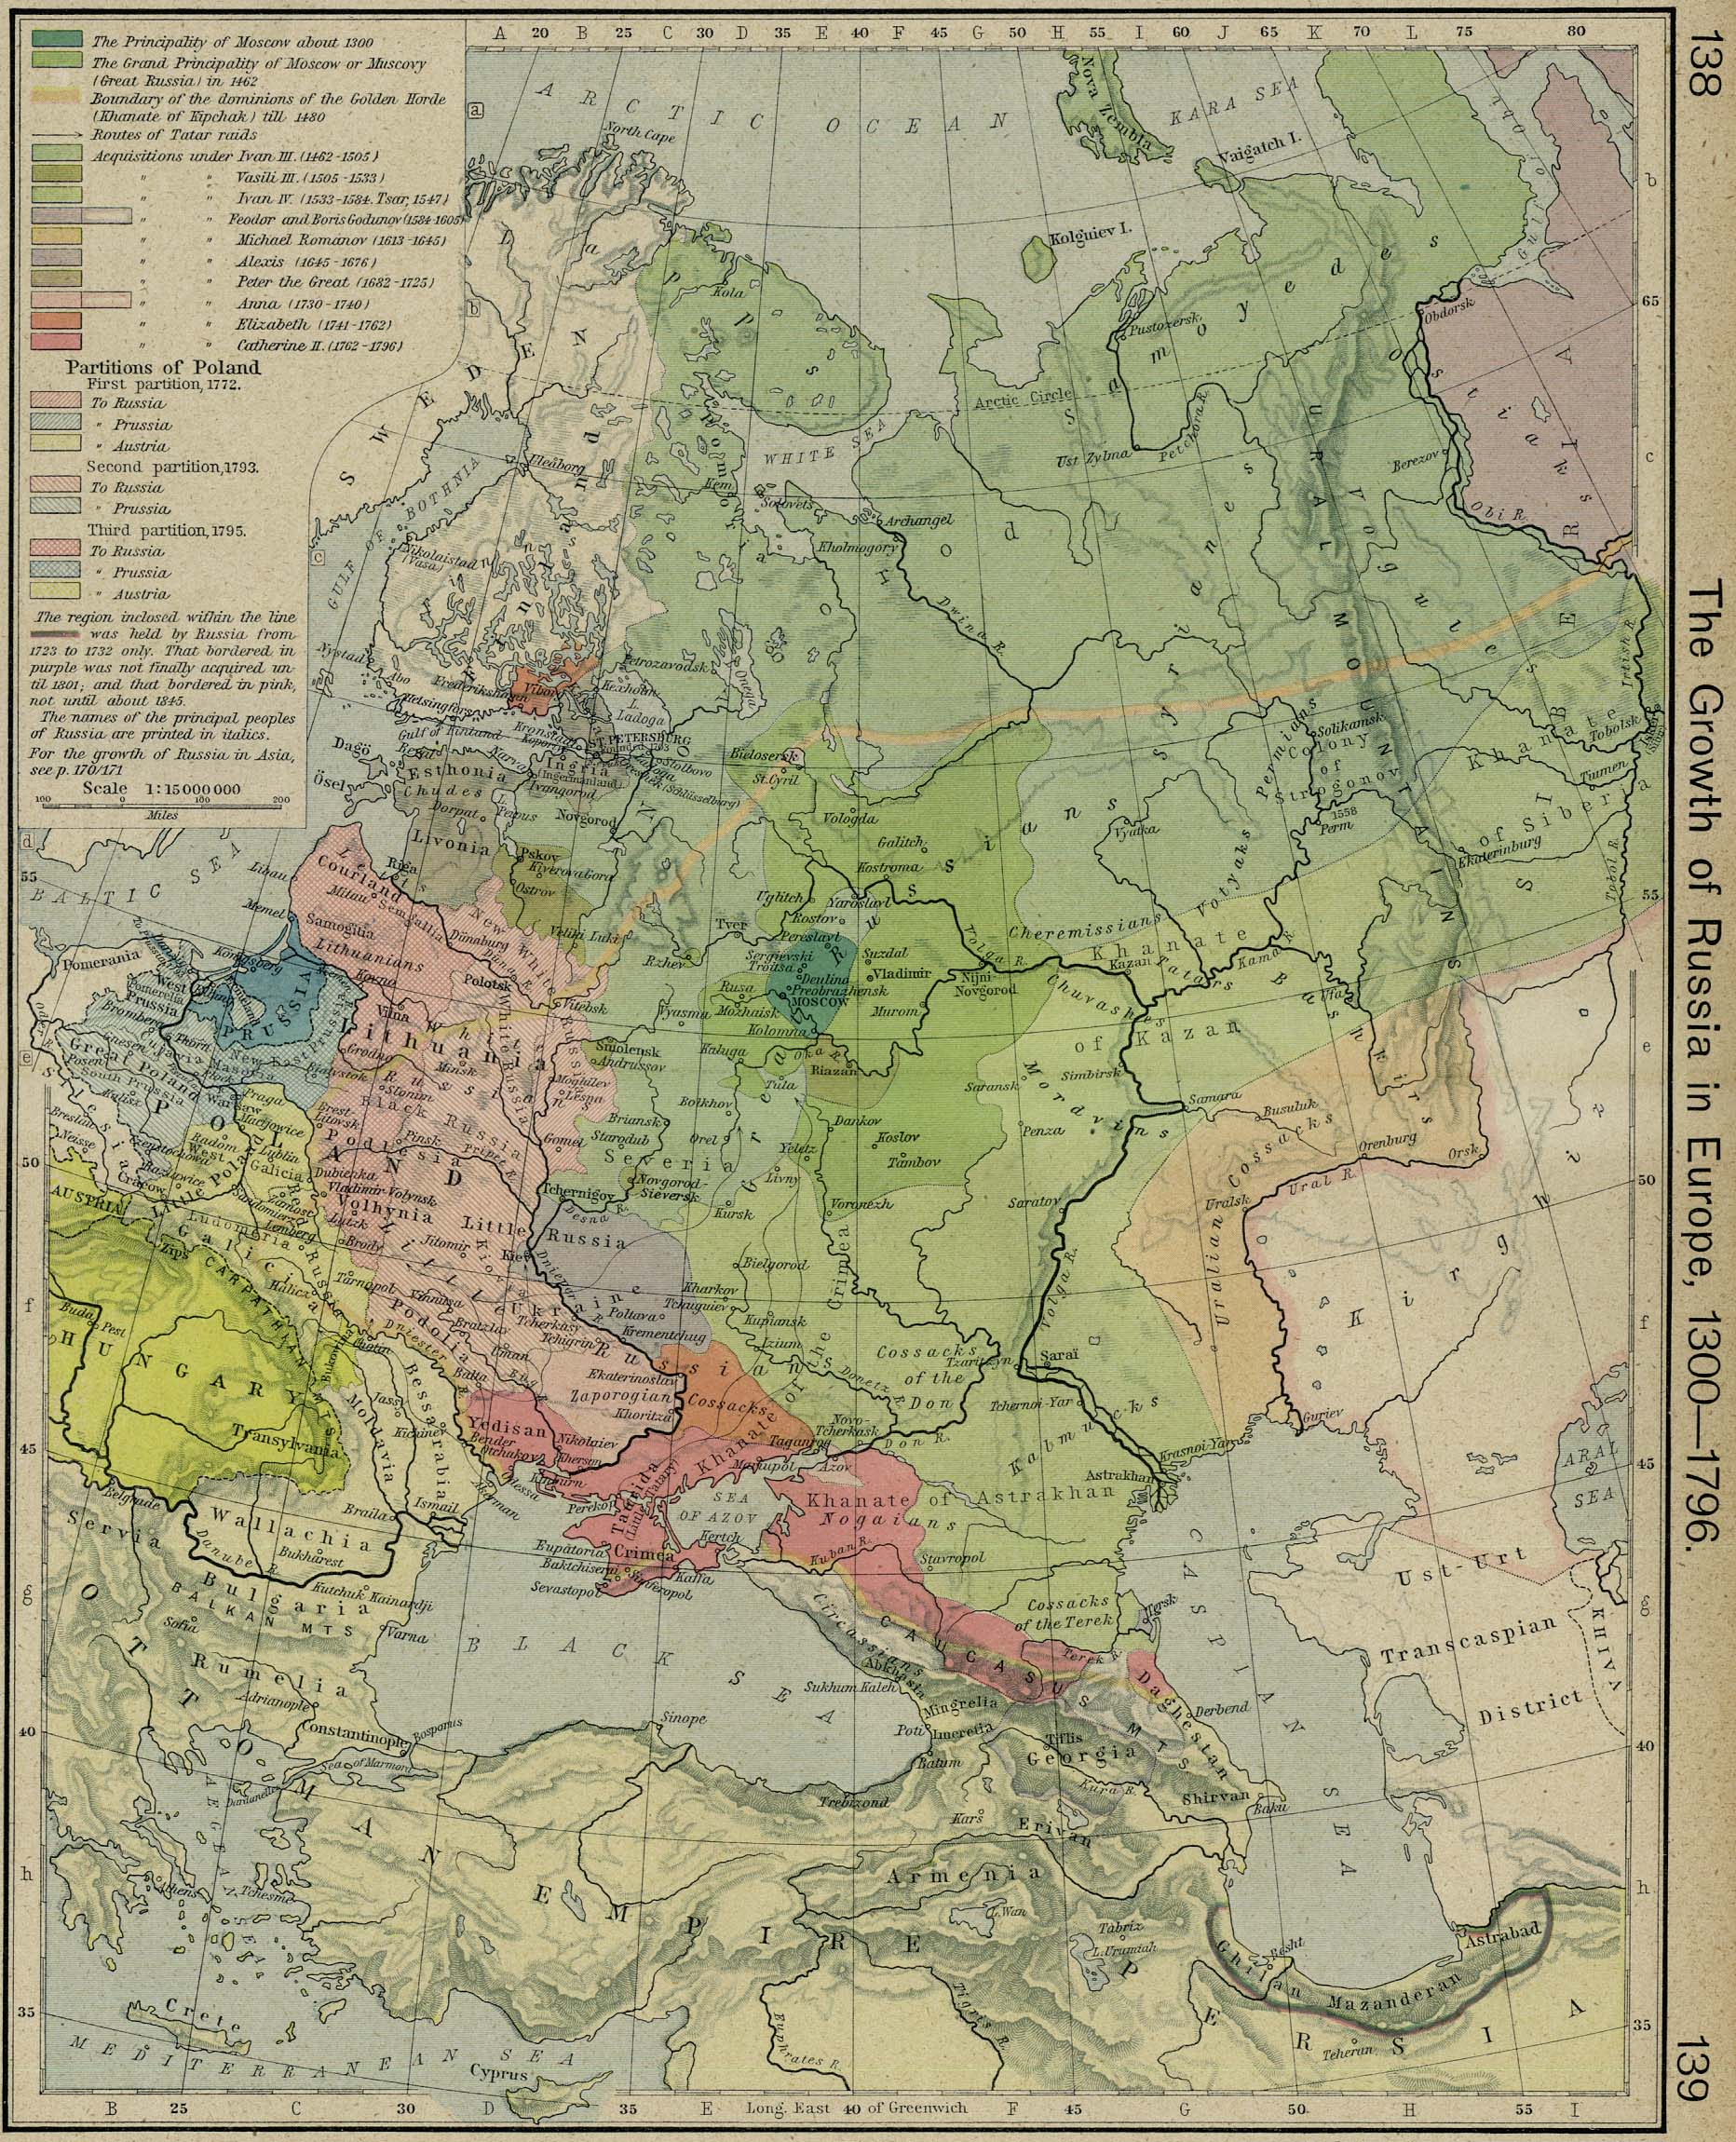 El Crecimiento de Rusia en Europa 1300-1796